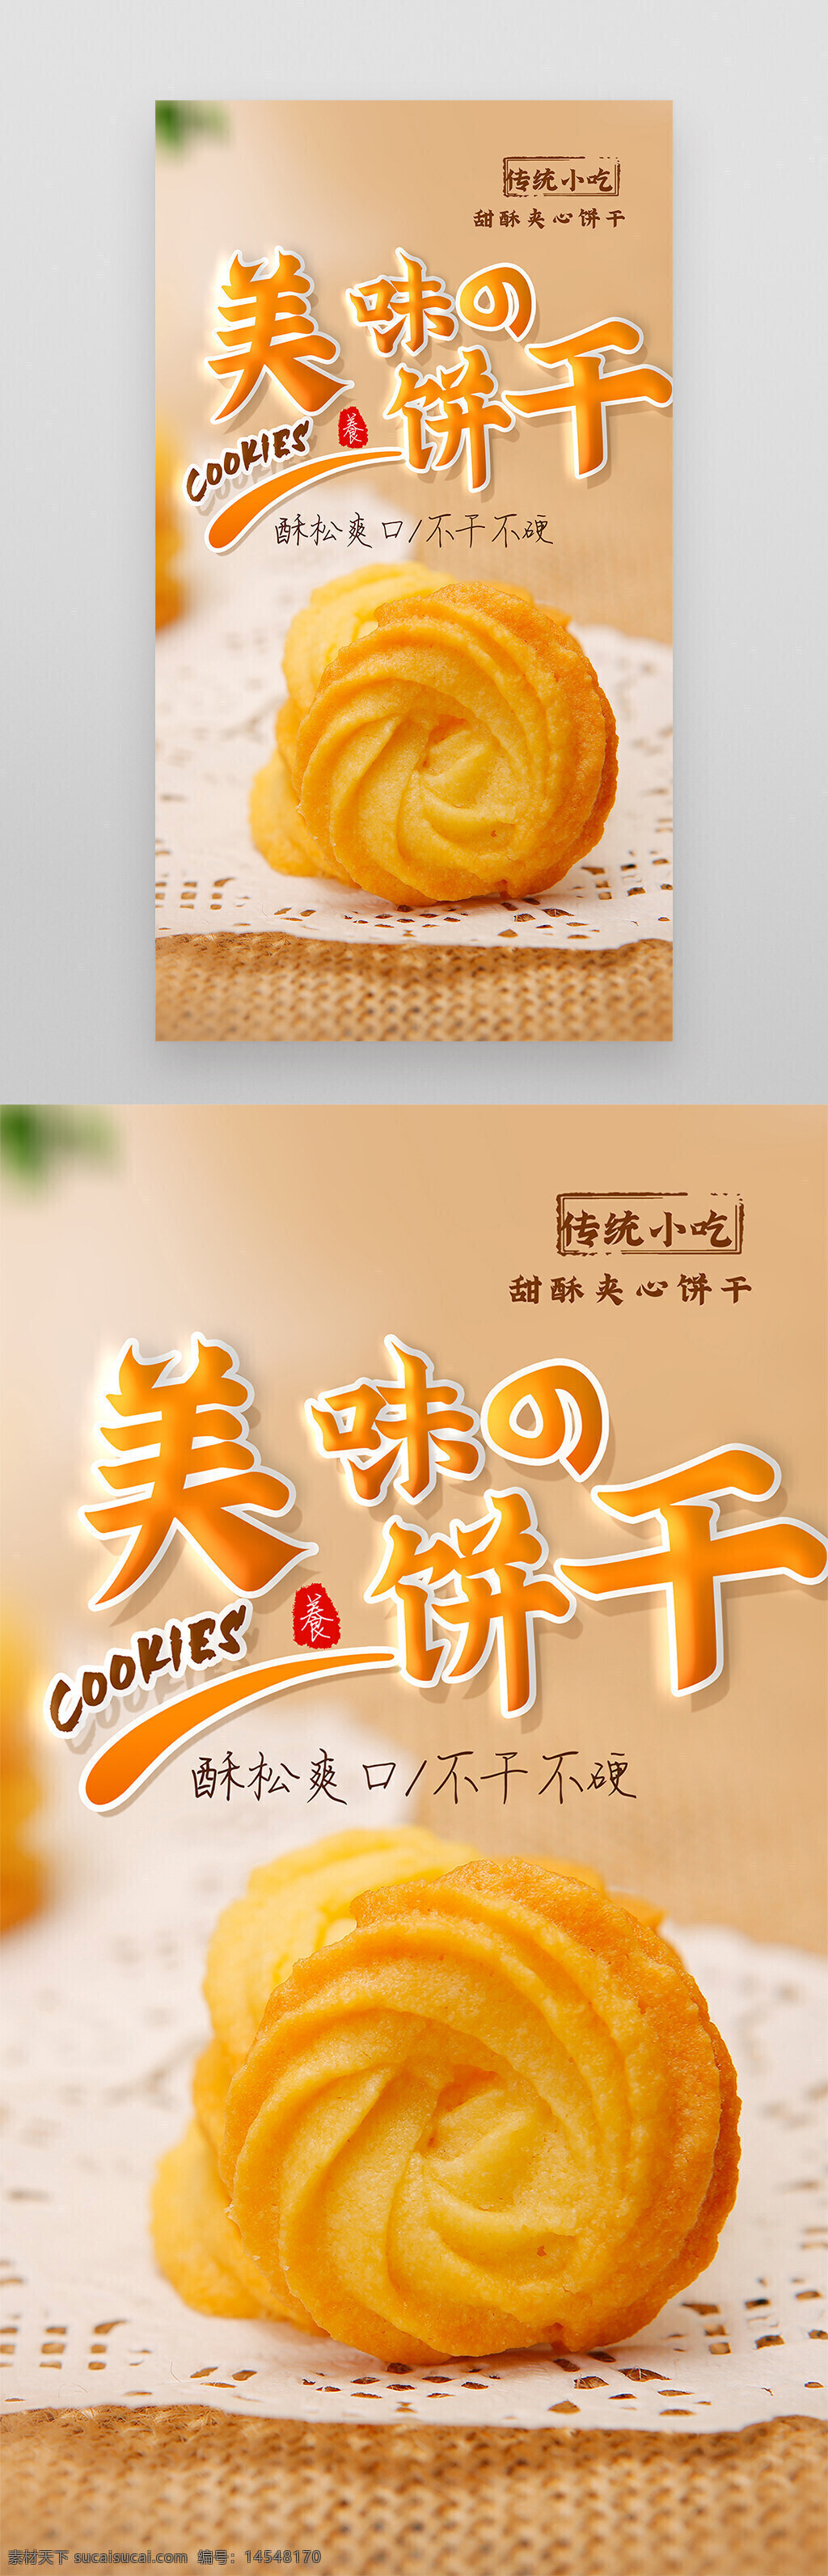 黄油 曲奇 饼干 美食 摄影图 海报